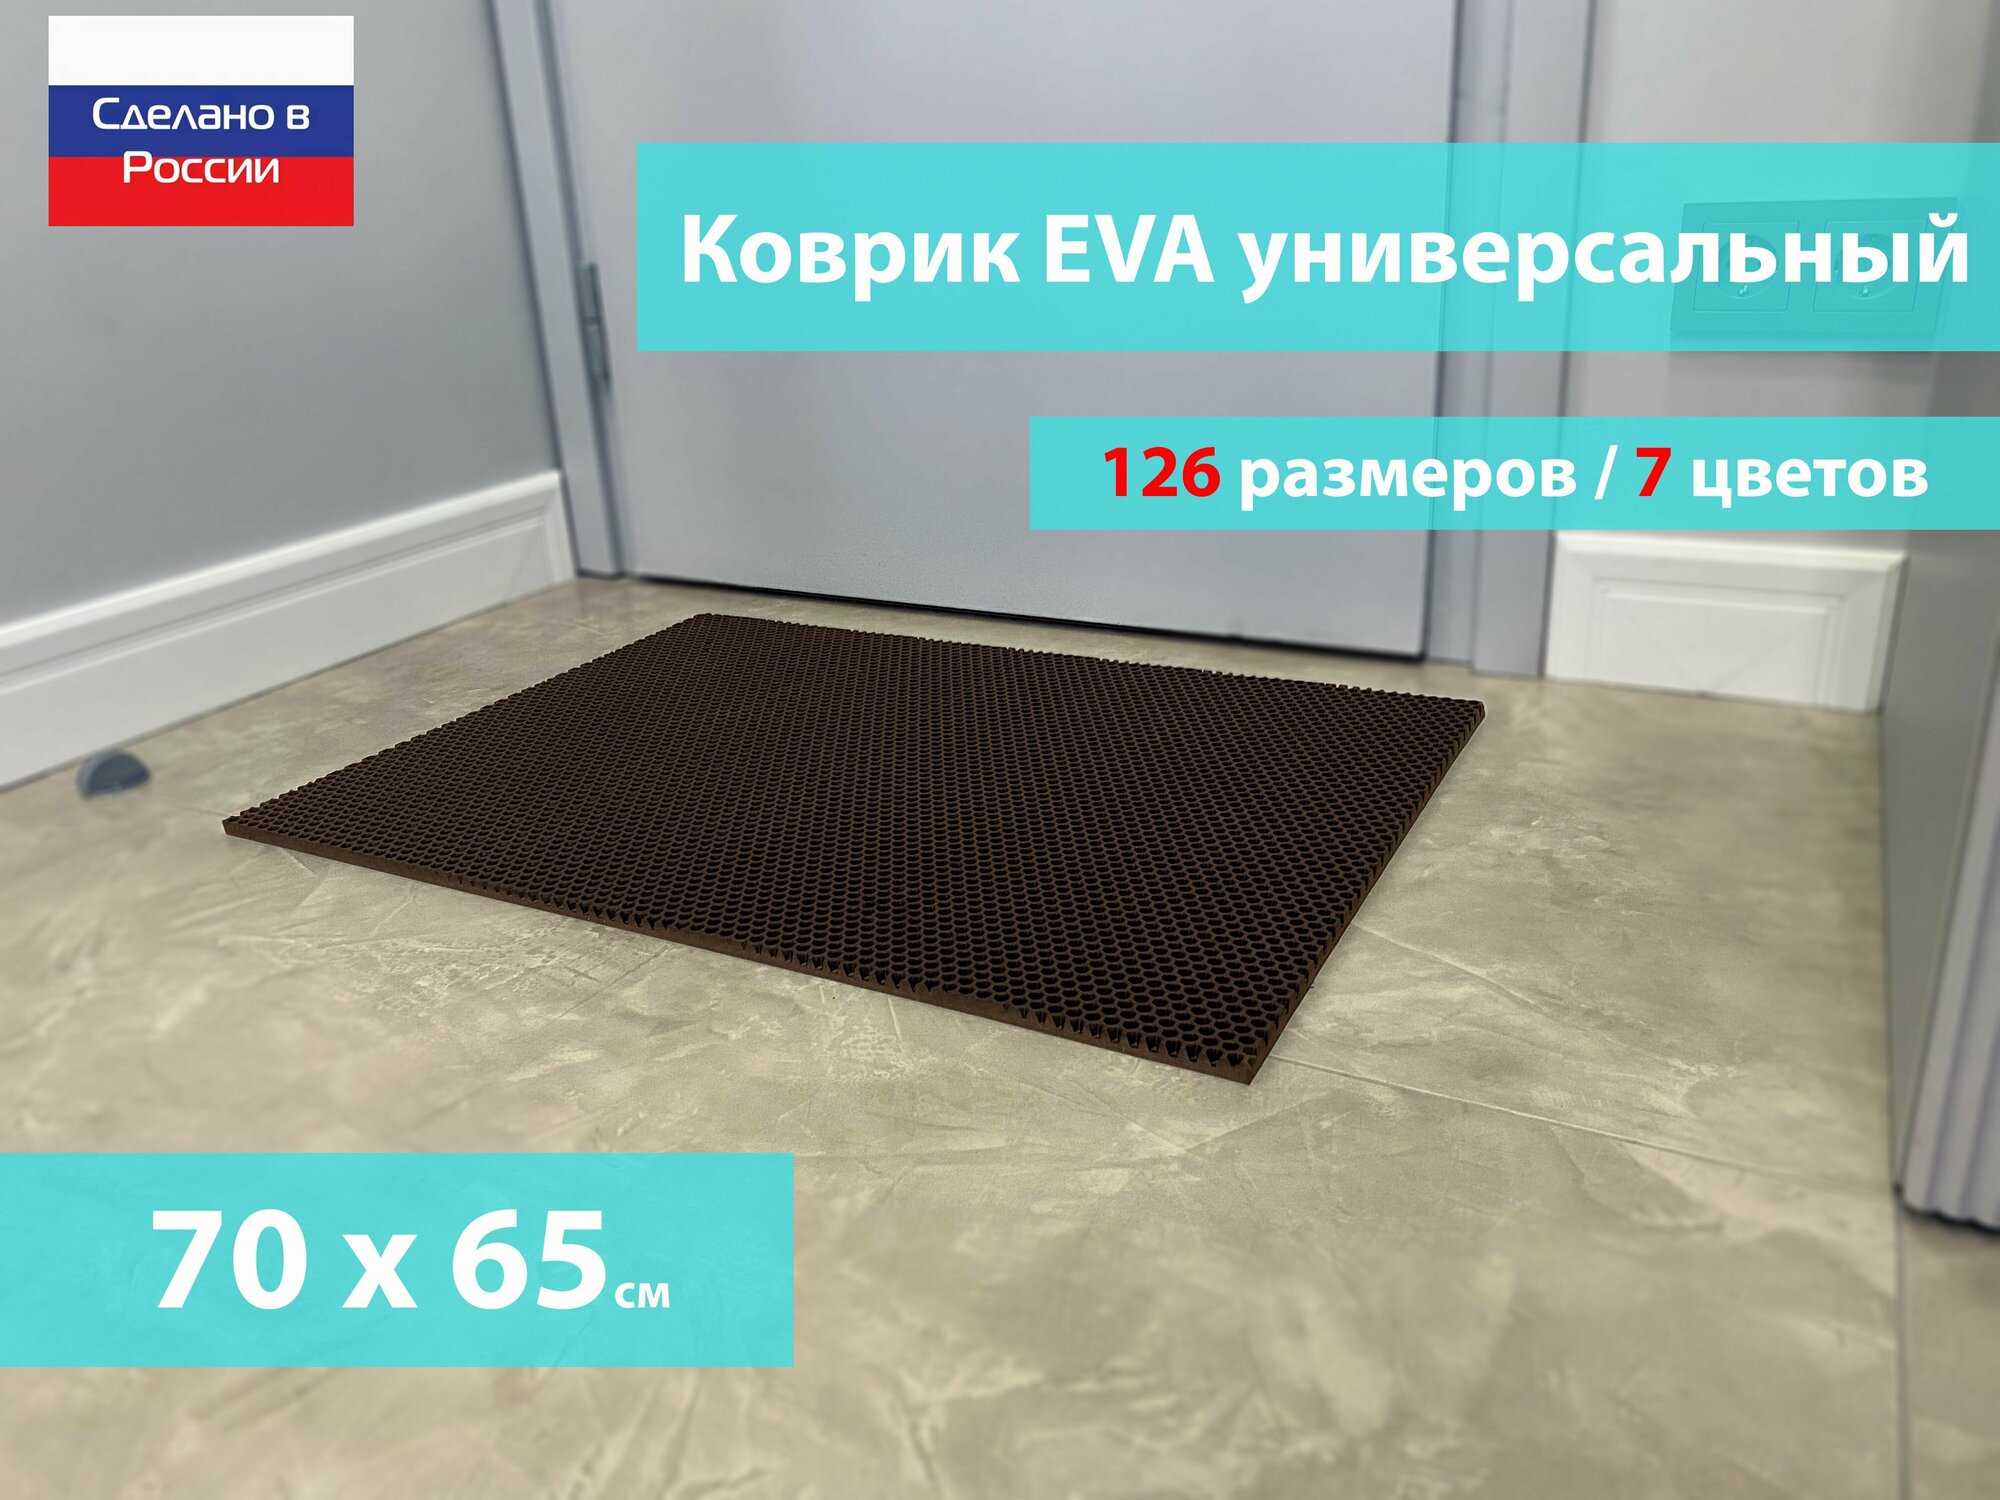 Коврик придверный EVA (ЕВА) в прихожую для обуви / Ковер ЭВА на пол перед дверью/ коричневый / размер 70 х 65 см